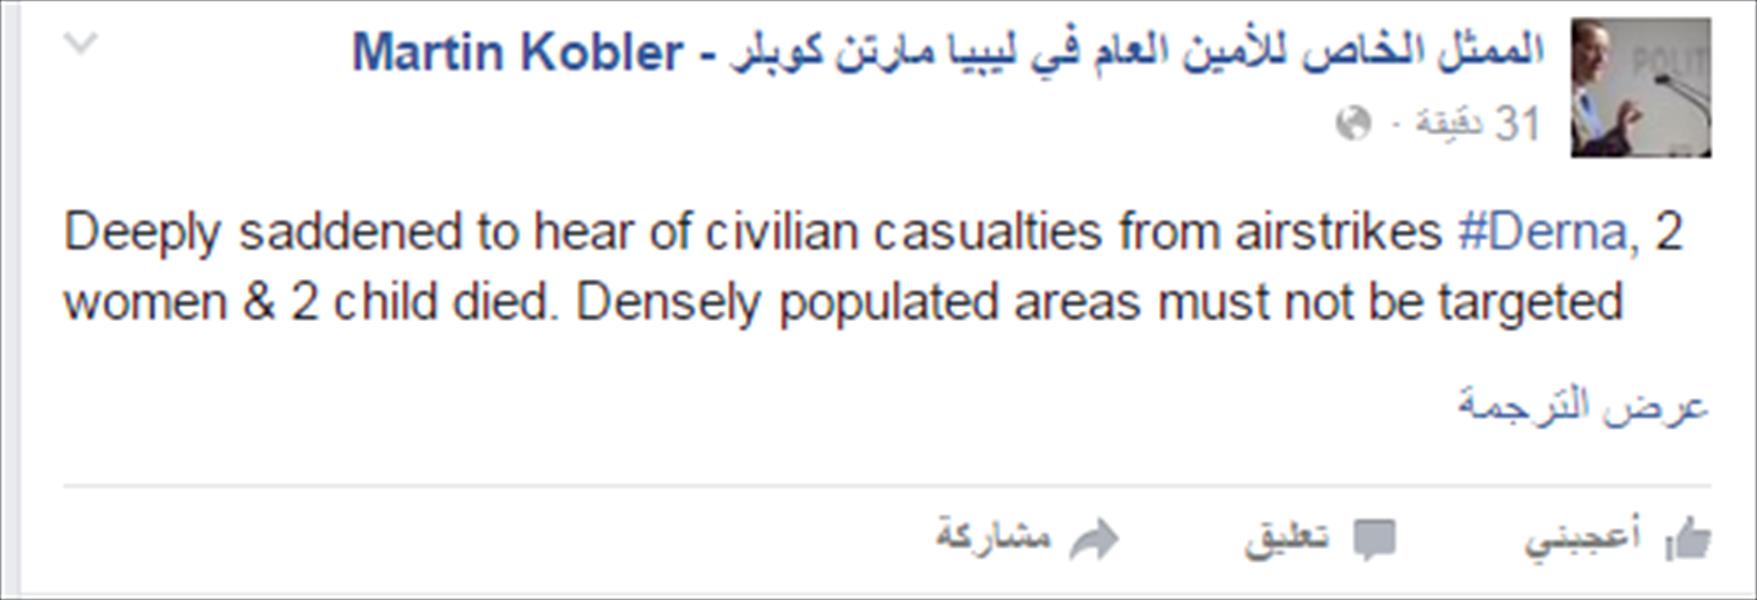 كوبلر يعرب عن أسفه لمقتل 3 أطفال في قصف جوي بدرنة